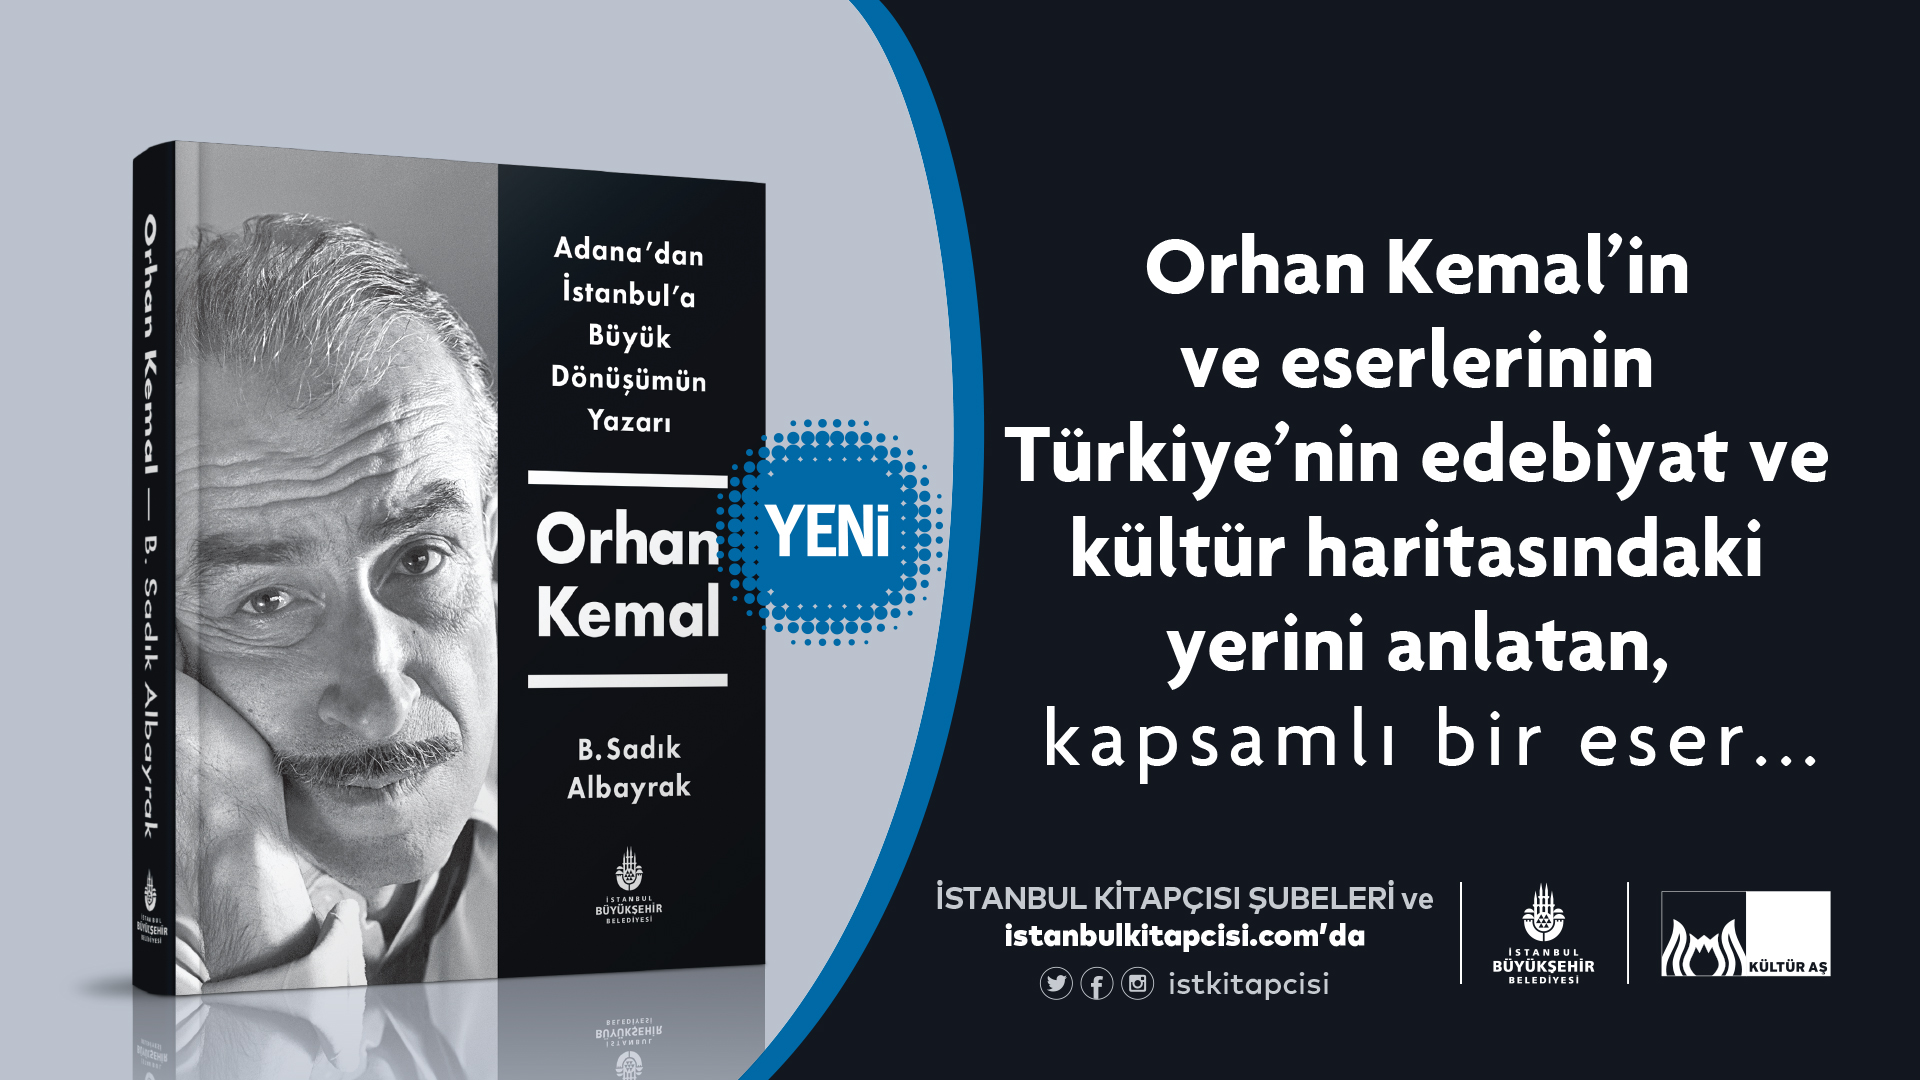 “Adana’dan İstanbul’a Büyük Dönüşümün Yazarı Orhan Kemal”  kitabı okurlarla buluştu!